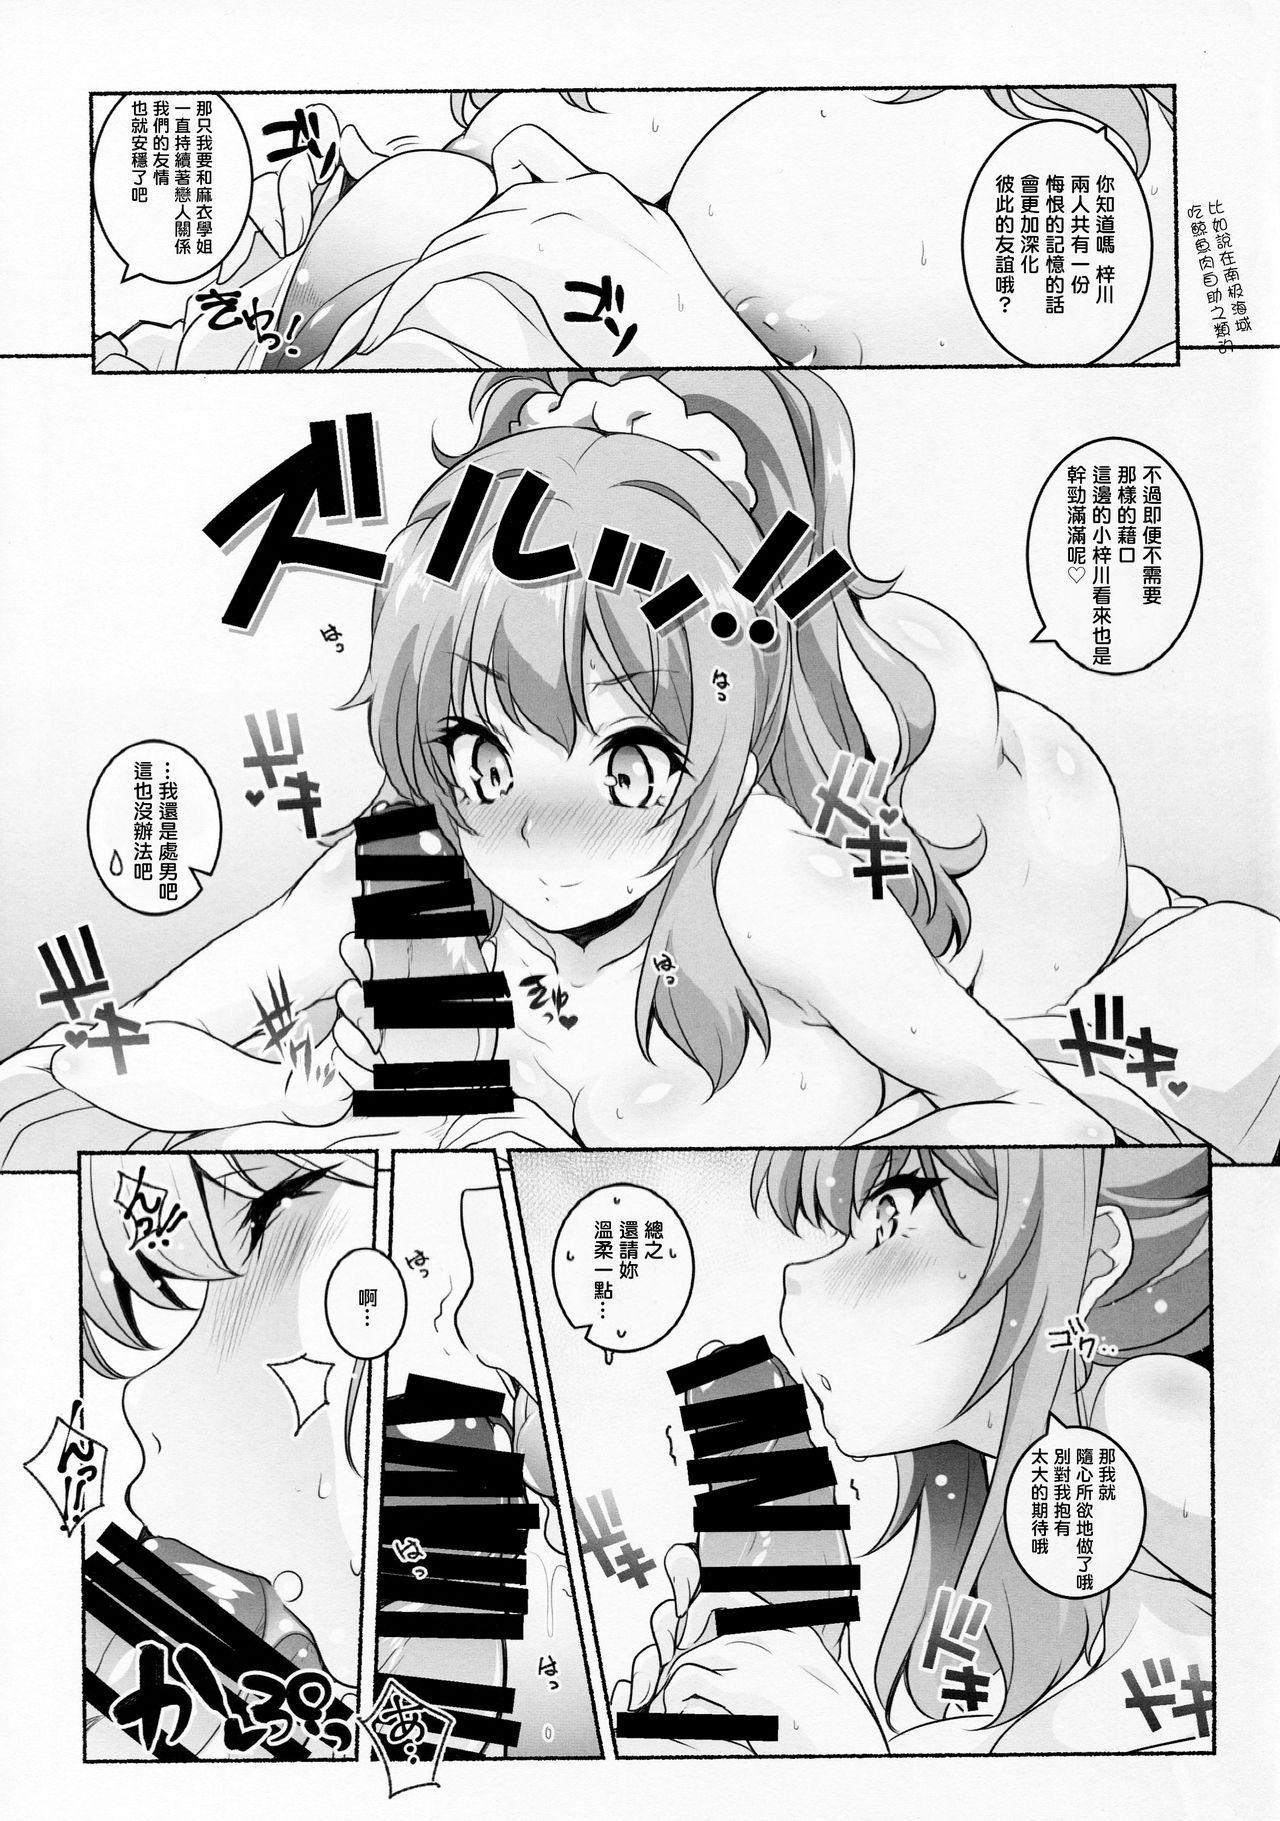 Foreplay Micchaku Suru Hodo Tooi Kyori - Seishun buta yarou wa bunny girl senpai no yume o minai Gaygroup - Page 8